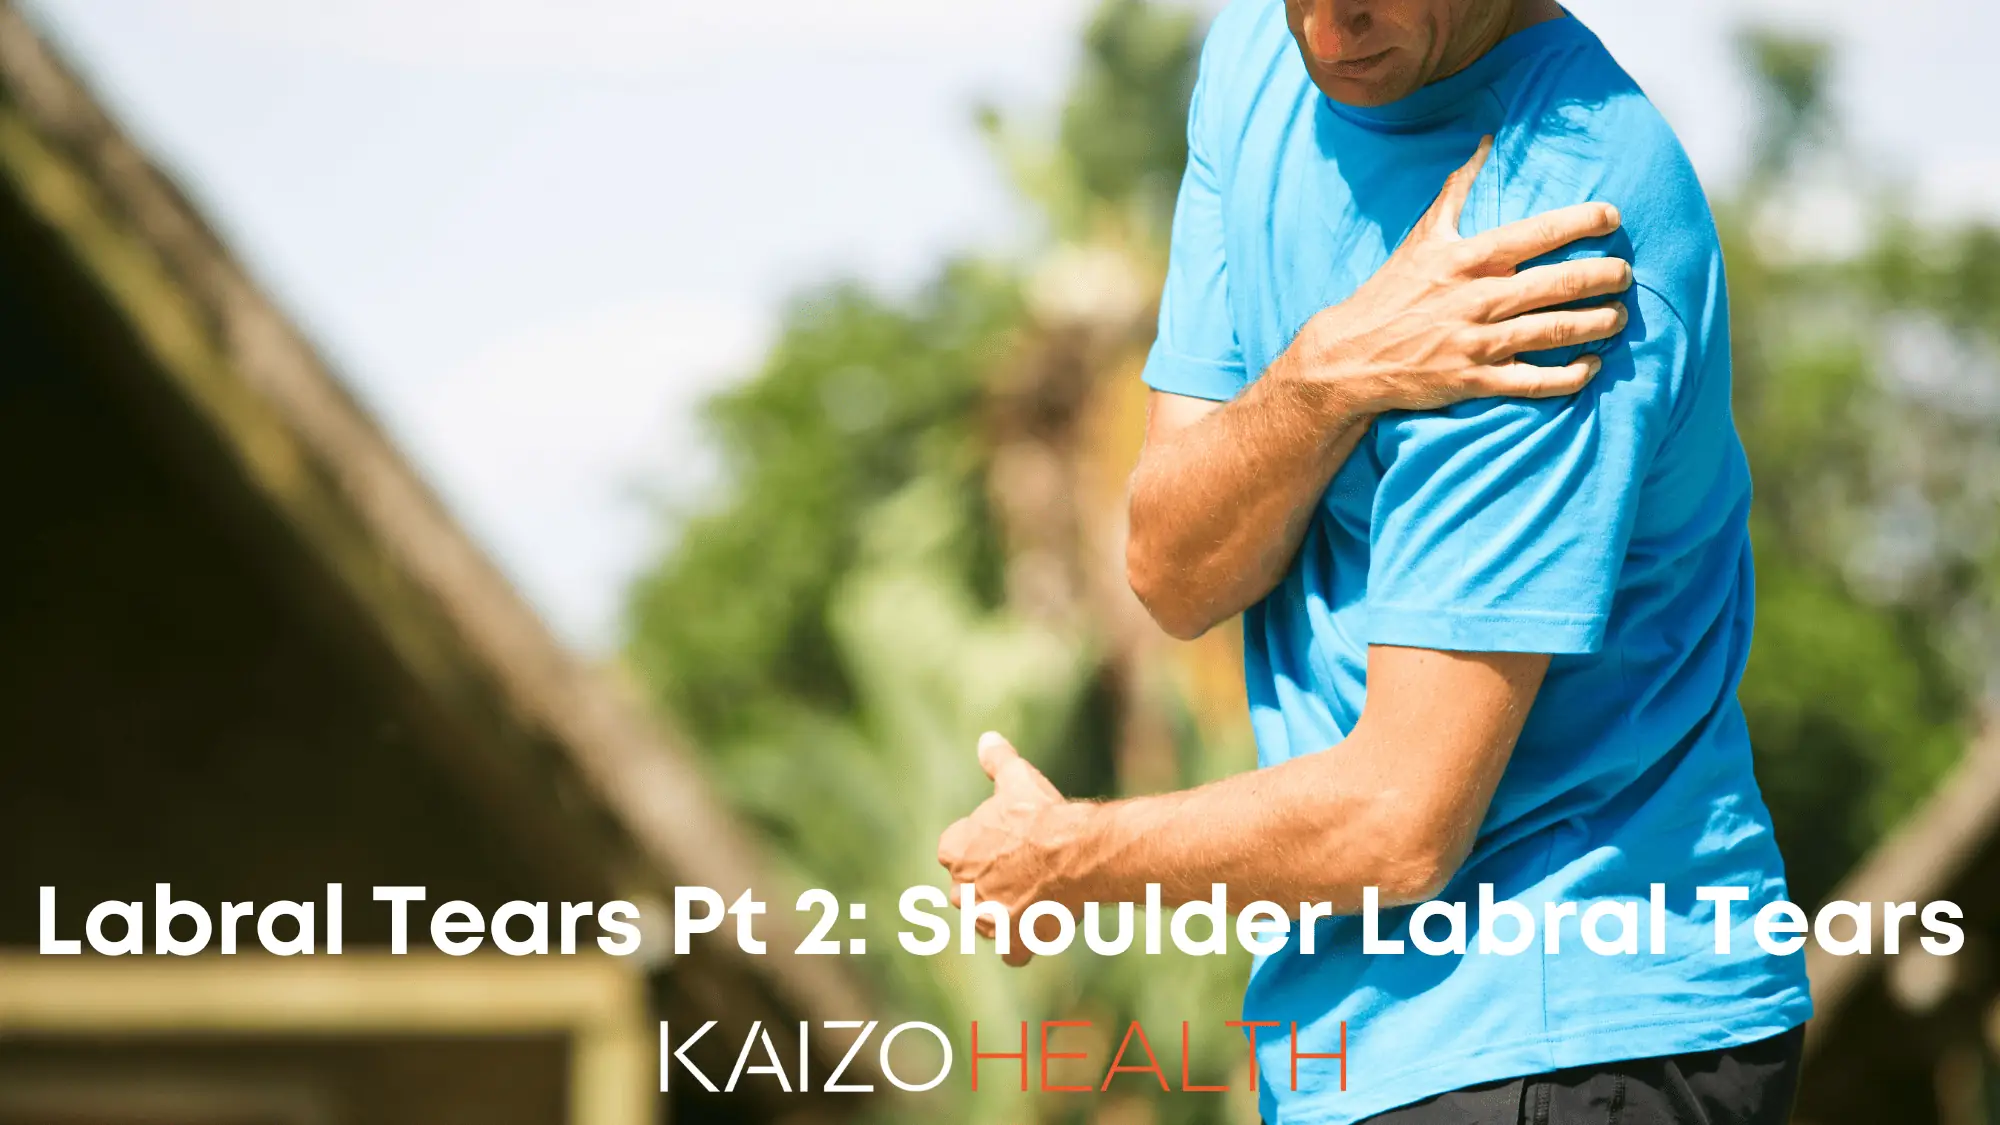 Labral Tears: Shoulders (Labral Tears Part 2)